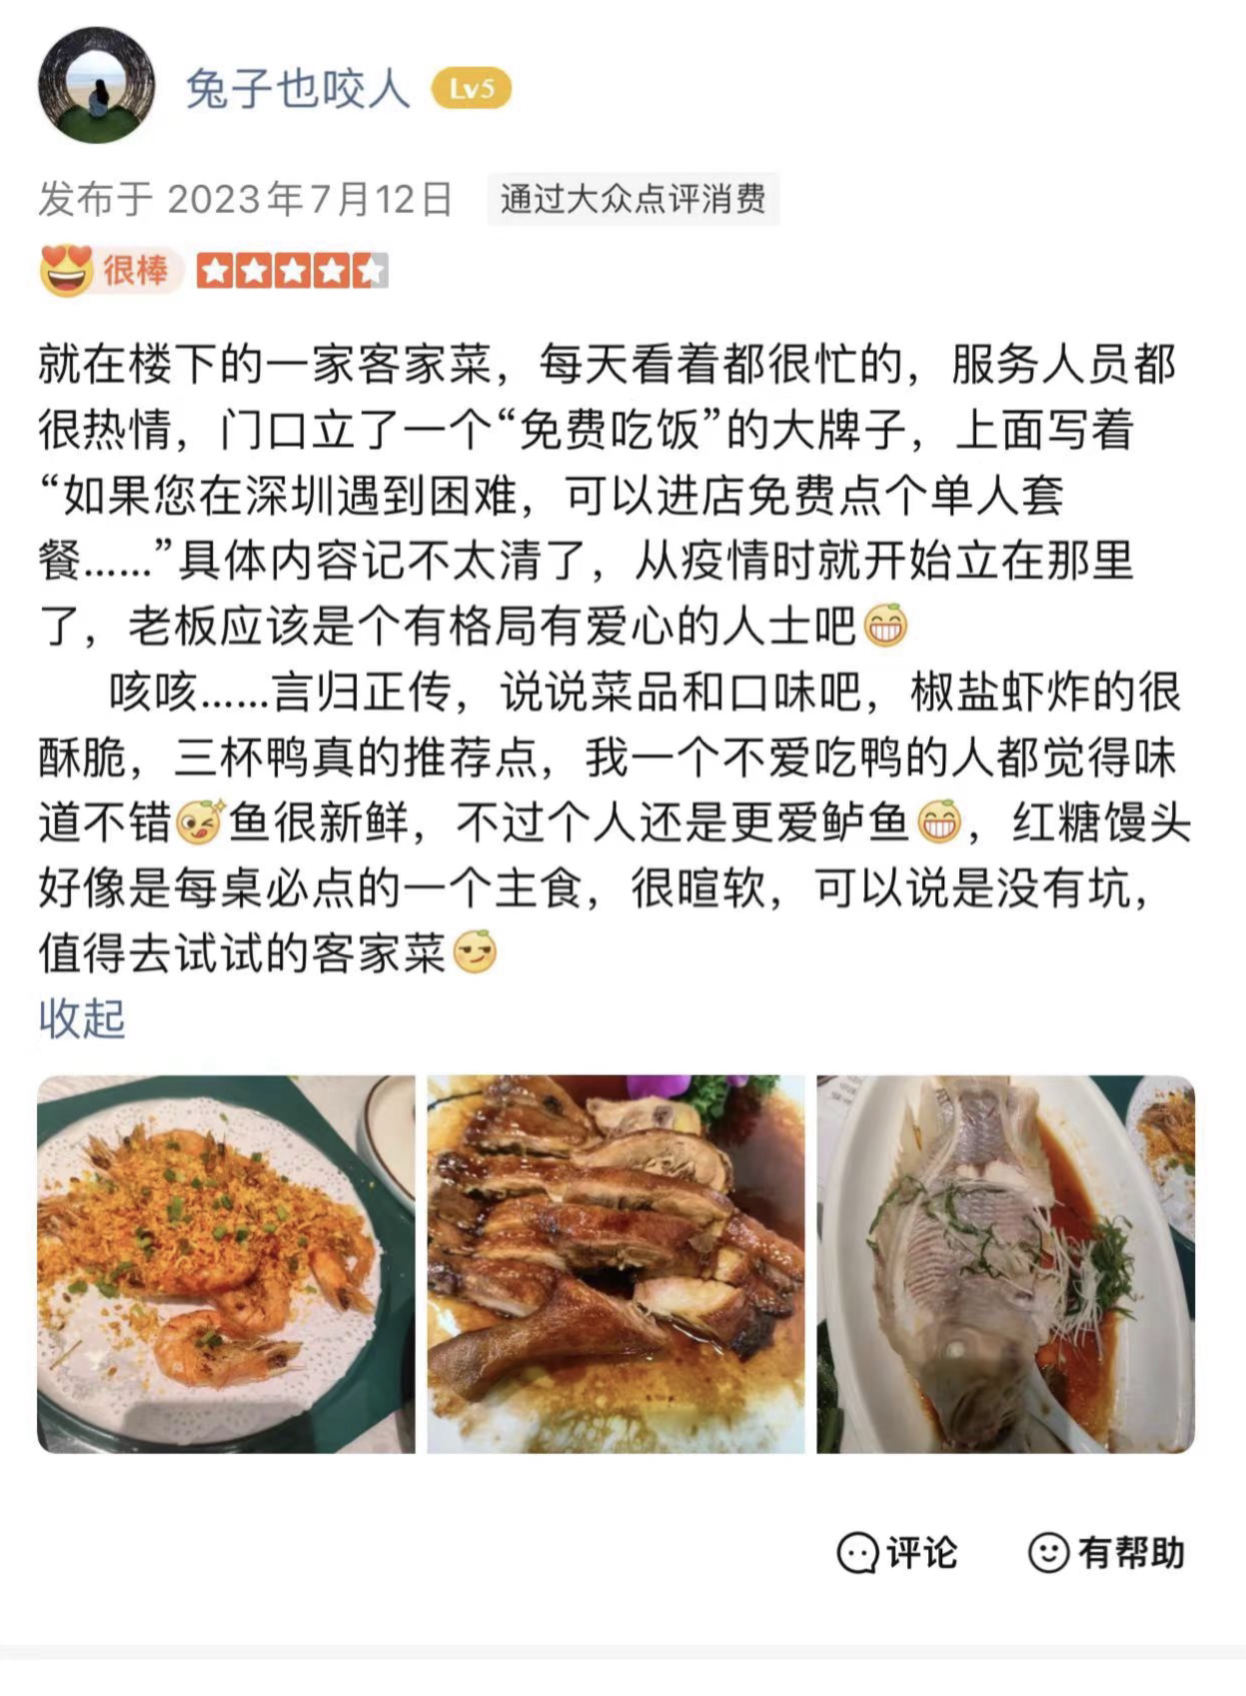 遇到困难可免费吃饭！深圳一餐馆老板“免费午餐”送了5年5